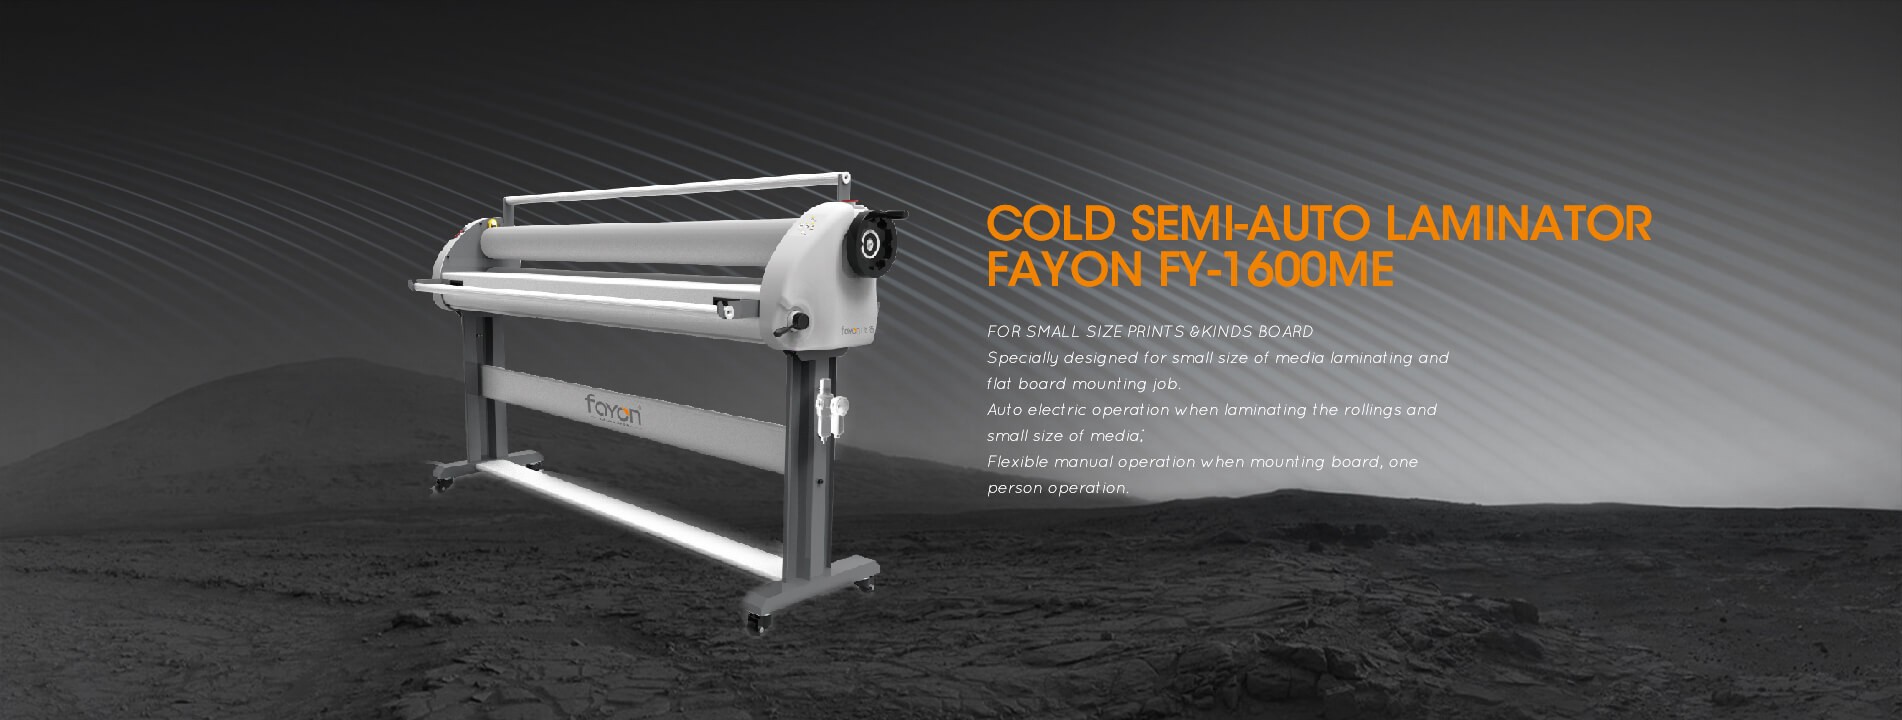 Cold Semi-Auto Laminator Fayon FY-1600ME